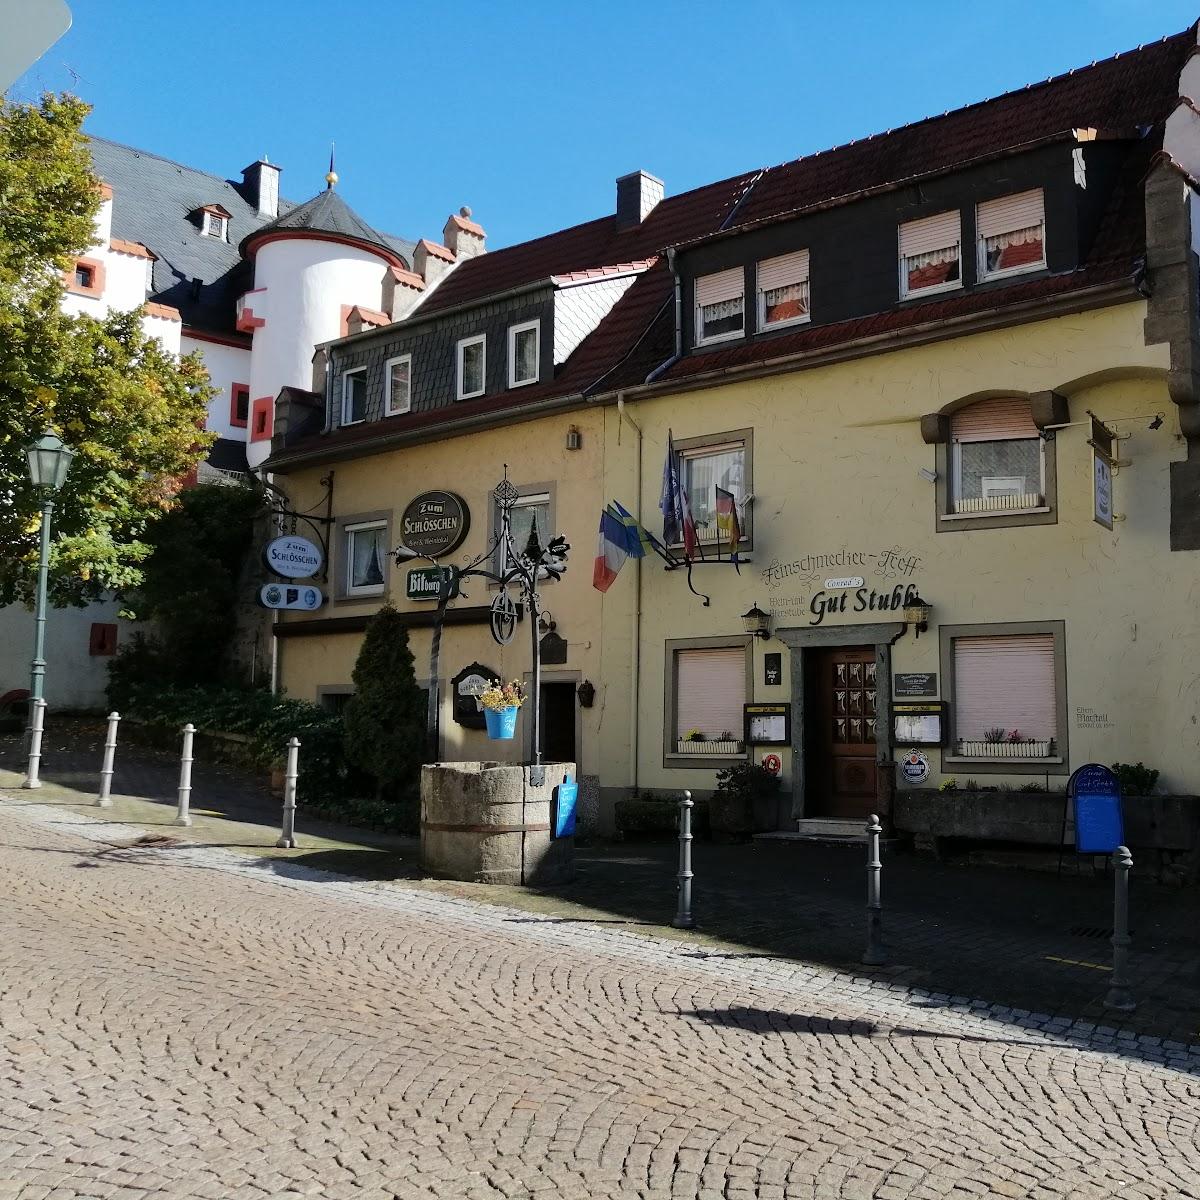 Restaurant "Zum Schlösschen Bier & Weinlokal" in Bad Soden-Salmünster